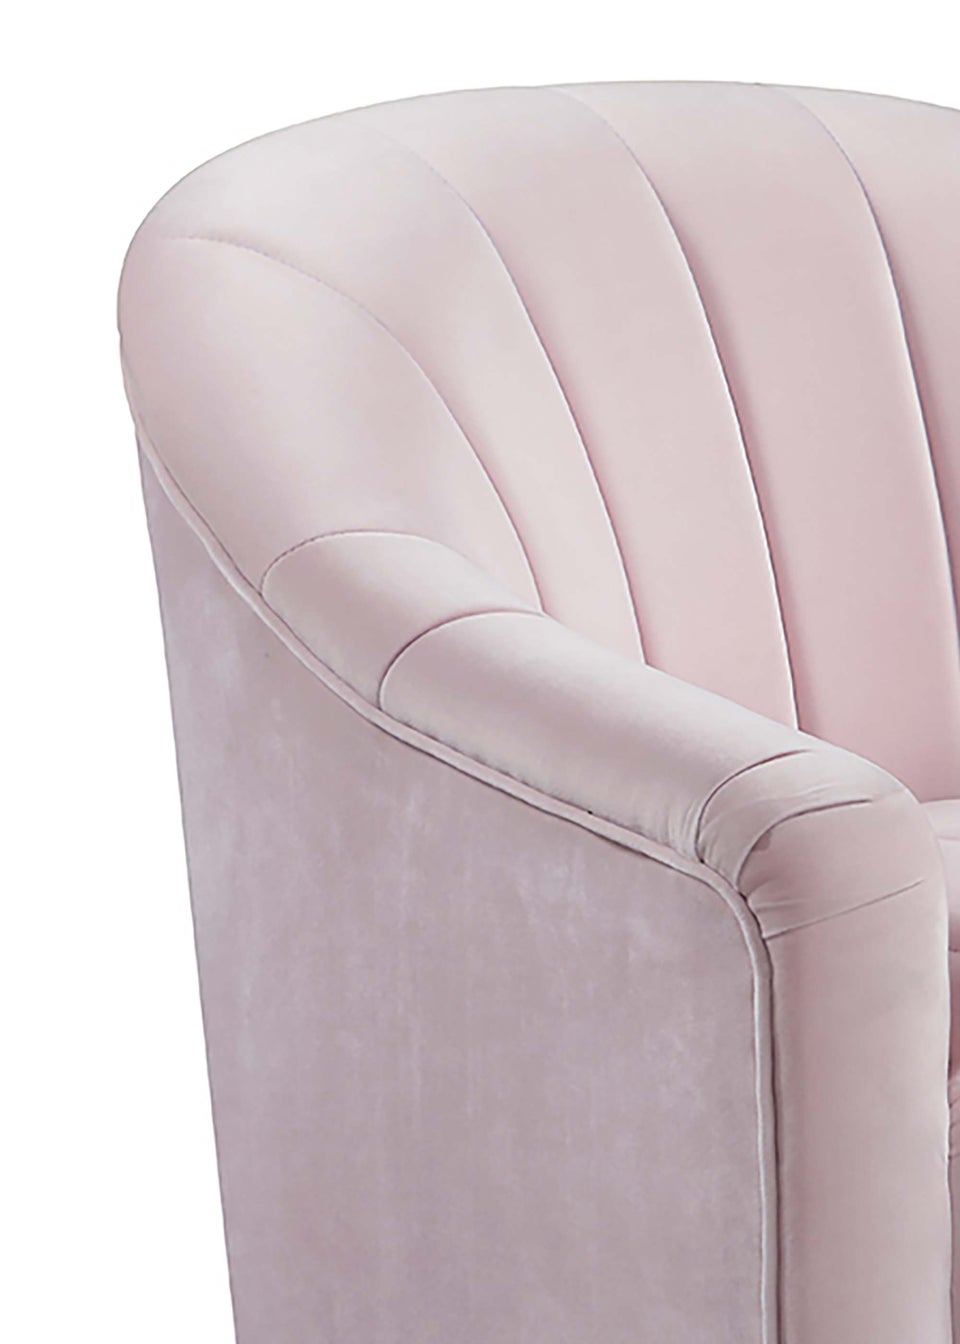 LPD Furniture Tiffany Swivel Chair Pink (800x750x750mm)